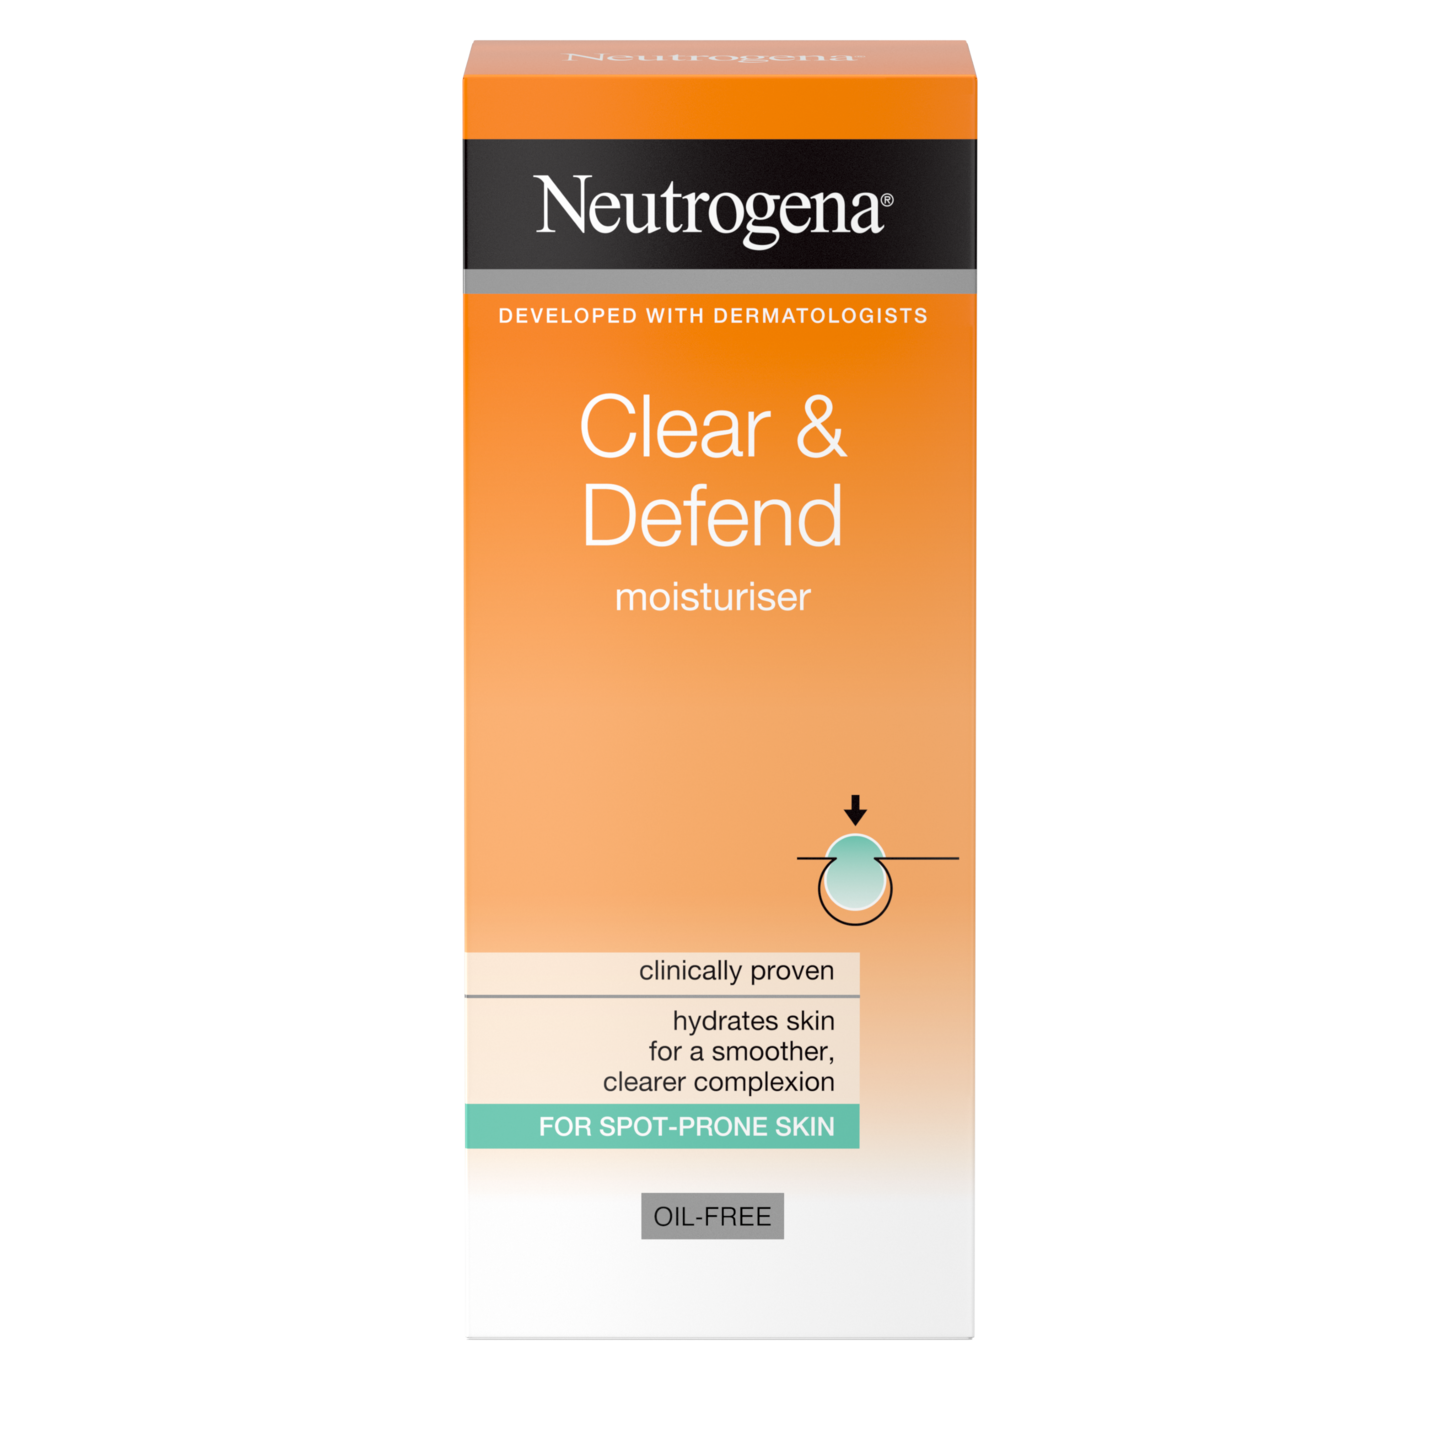 Neutrogena Clear & Defend kosteusvoide 50 ml